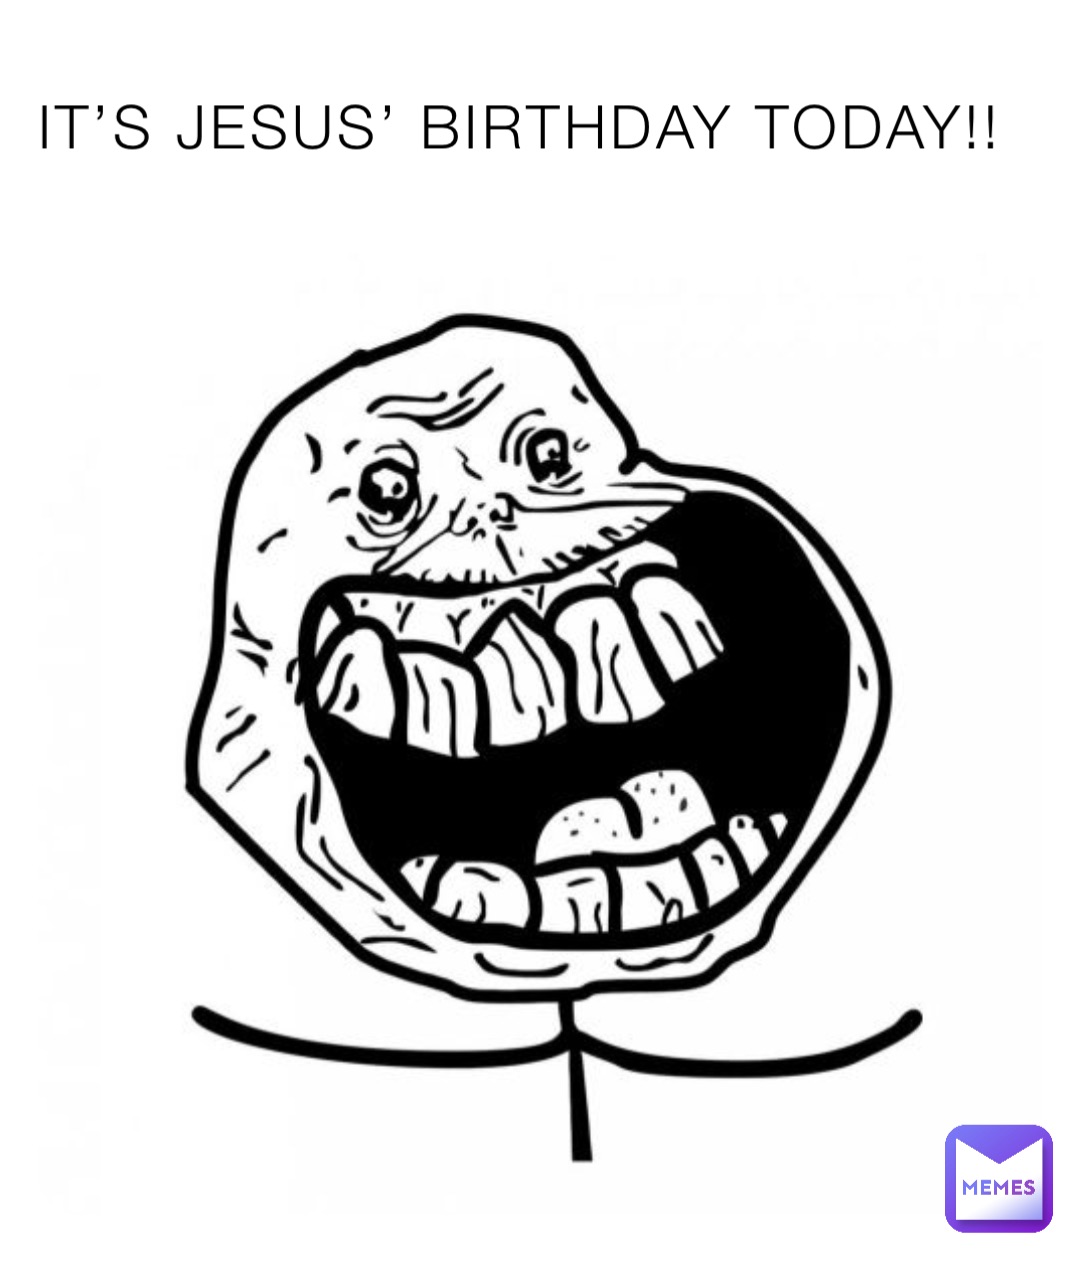 IT’S JESUS’ BIRTHDAY TODAY!!